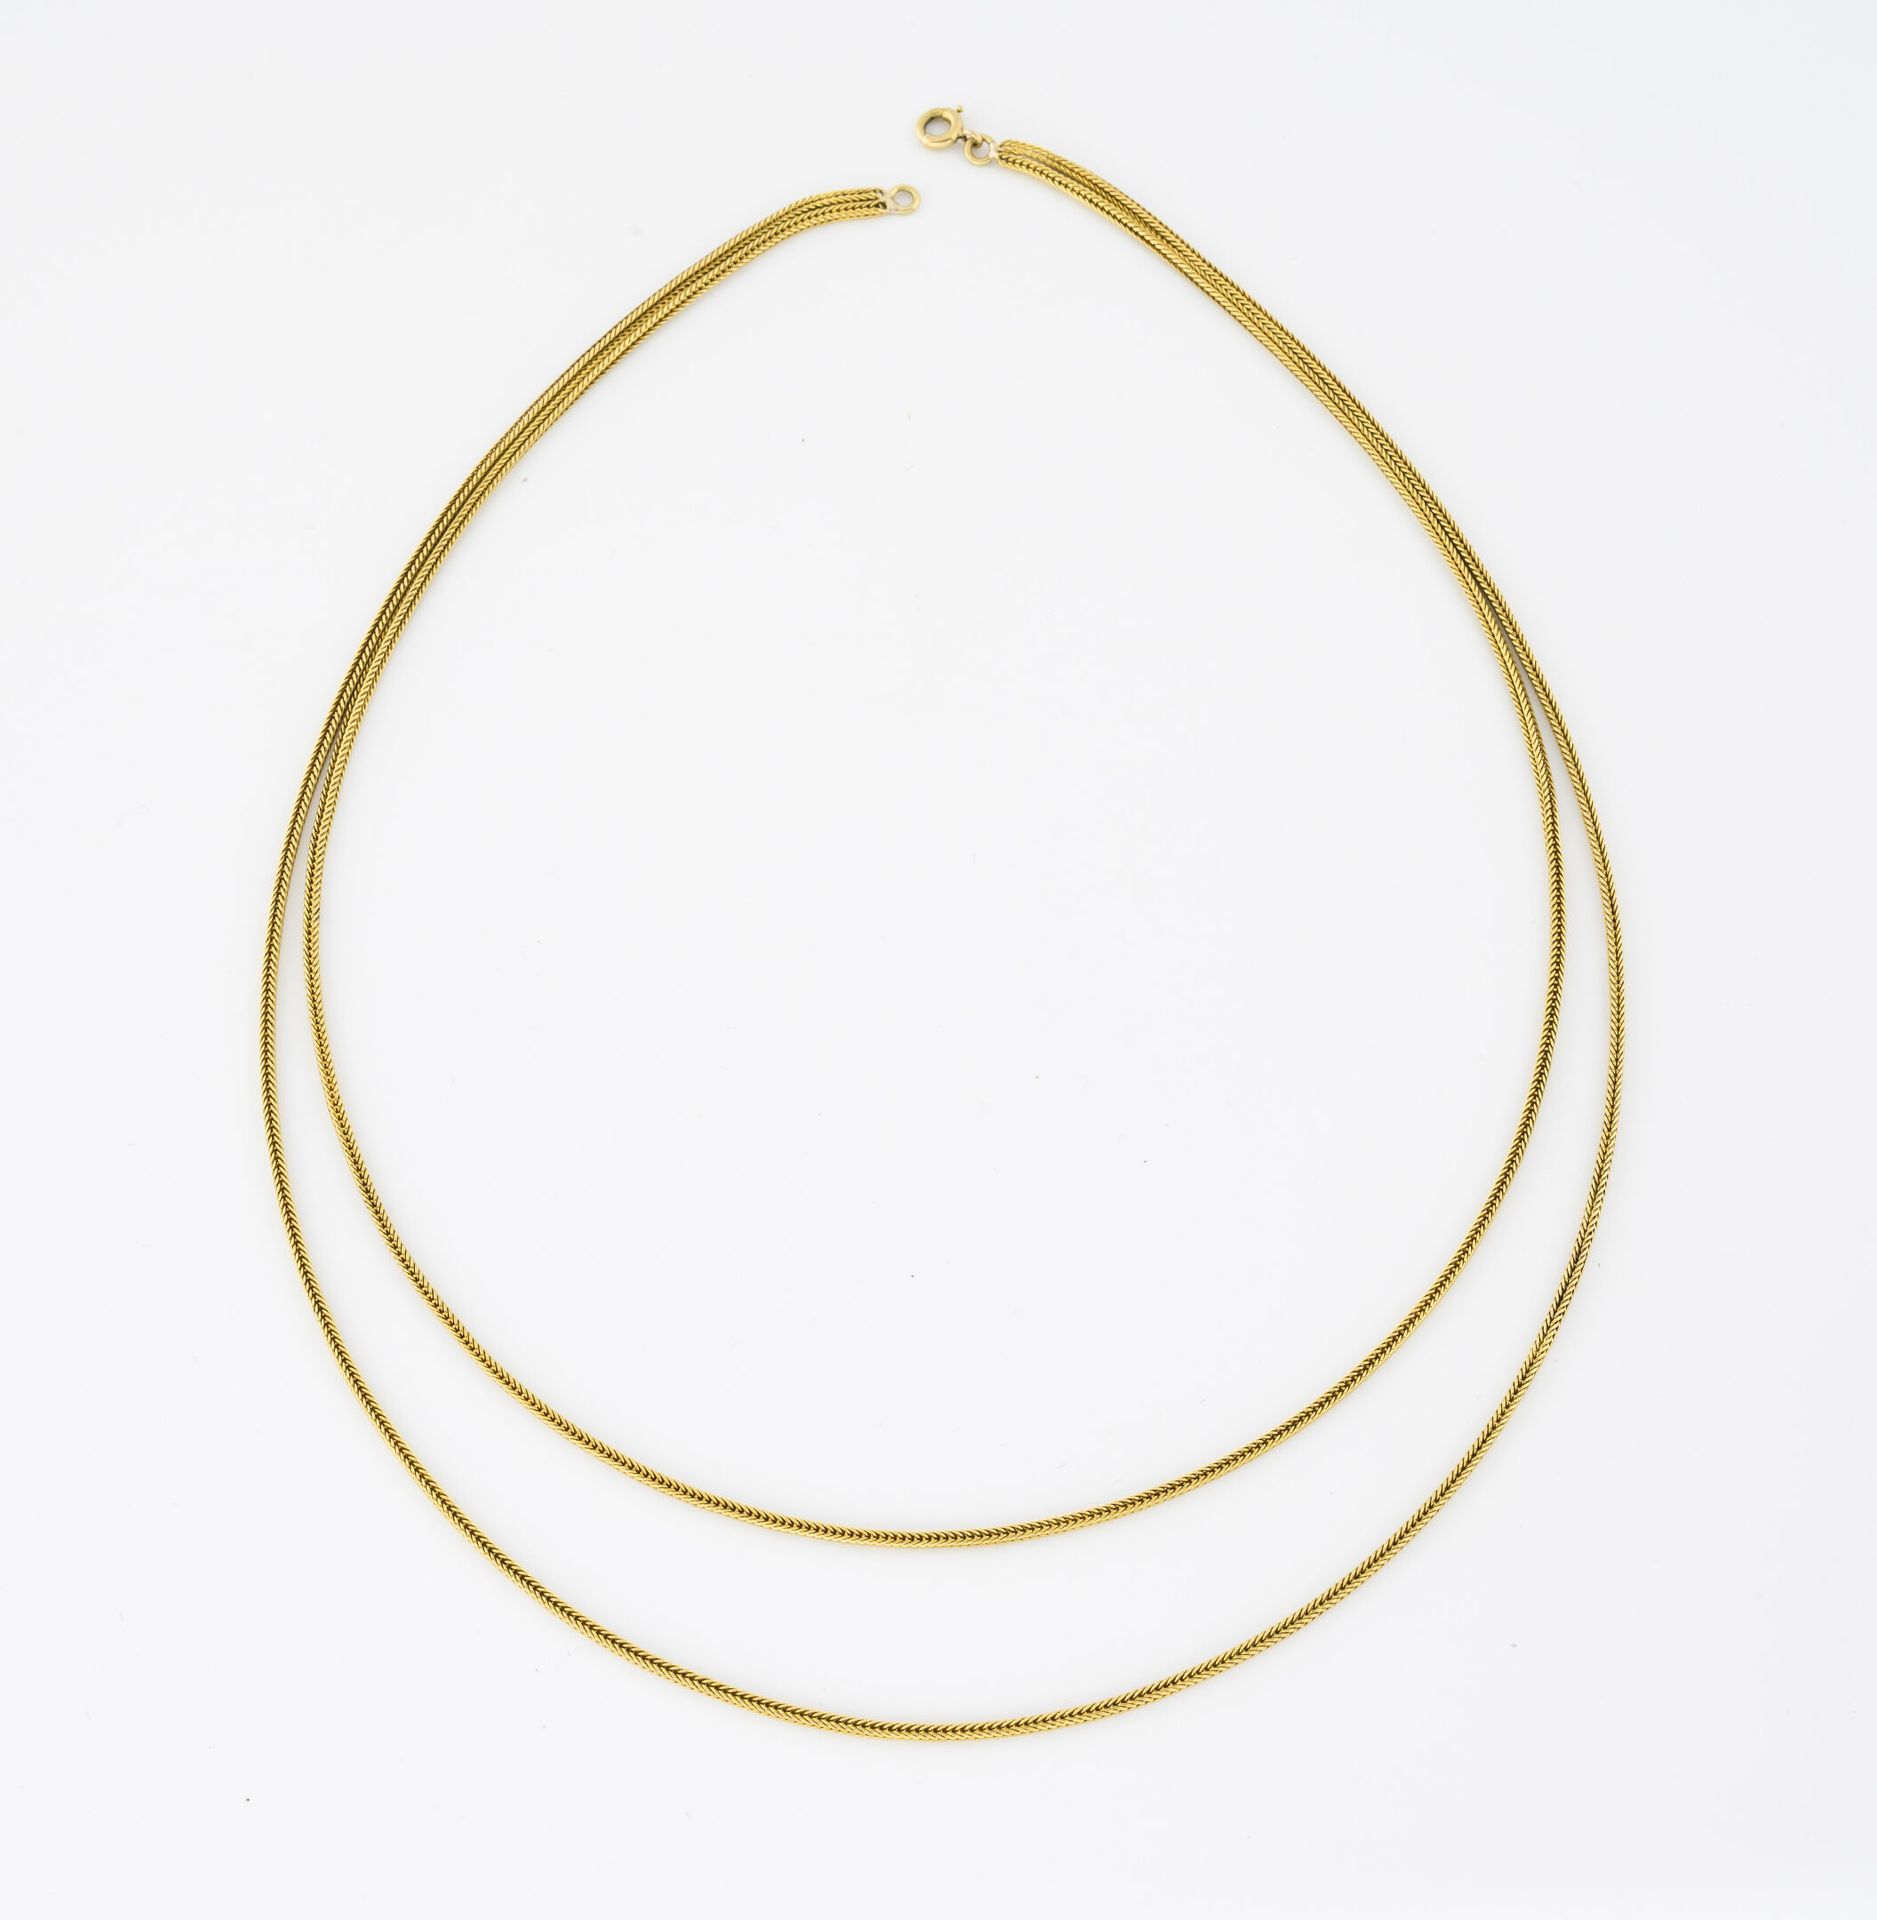 Null 黄金（750）项链，有两行辫子网。

弹簧环扣。

重量：13克。- 长度：44厘米。